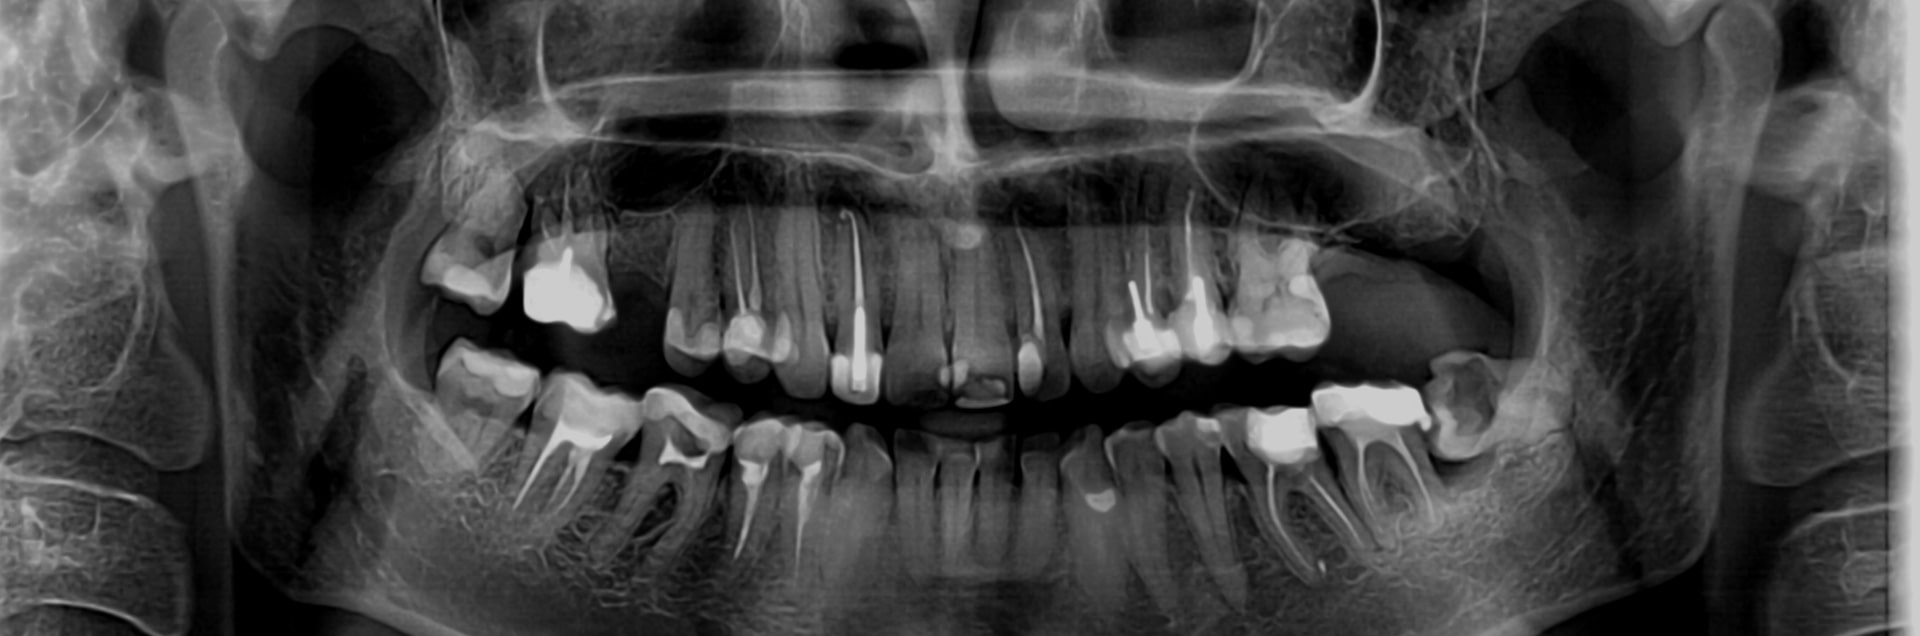 Рентген зубов Томск Ясный никитина 20 томск стоматология телефон